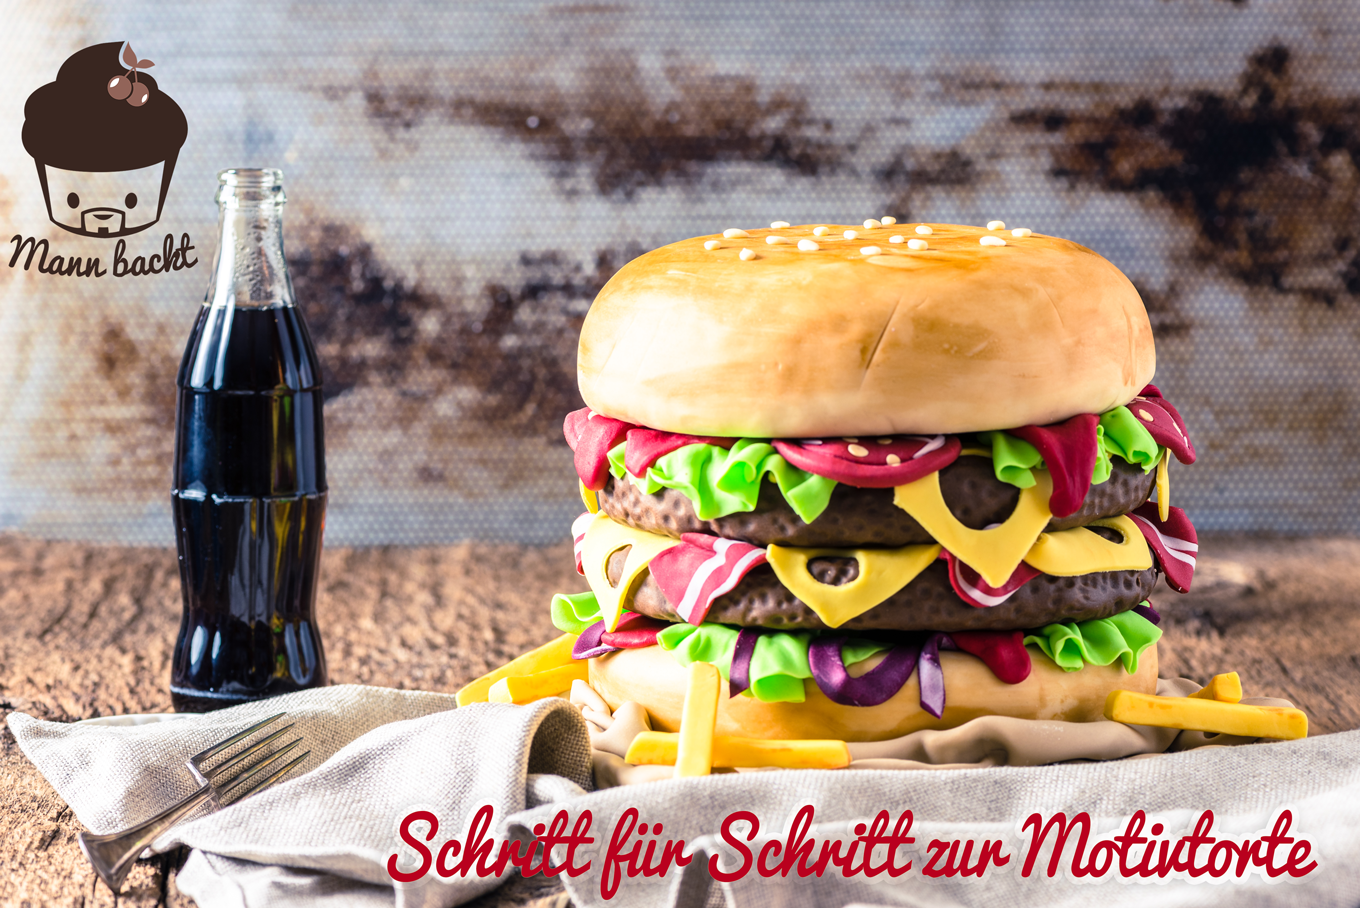 Motivtorte-Anleitung-Hamburger-Schritt-für-Schritt-Marian-Moschen-Mann-backt